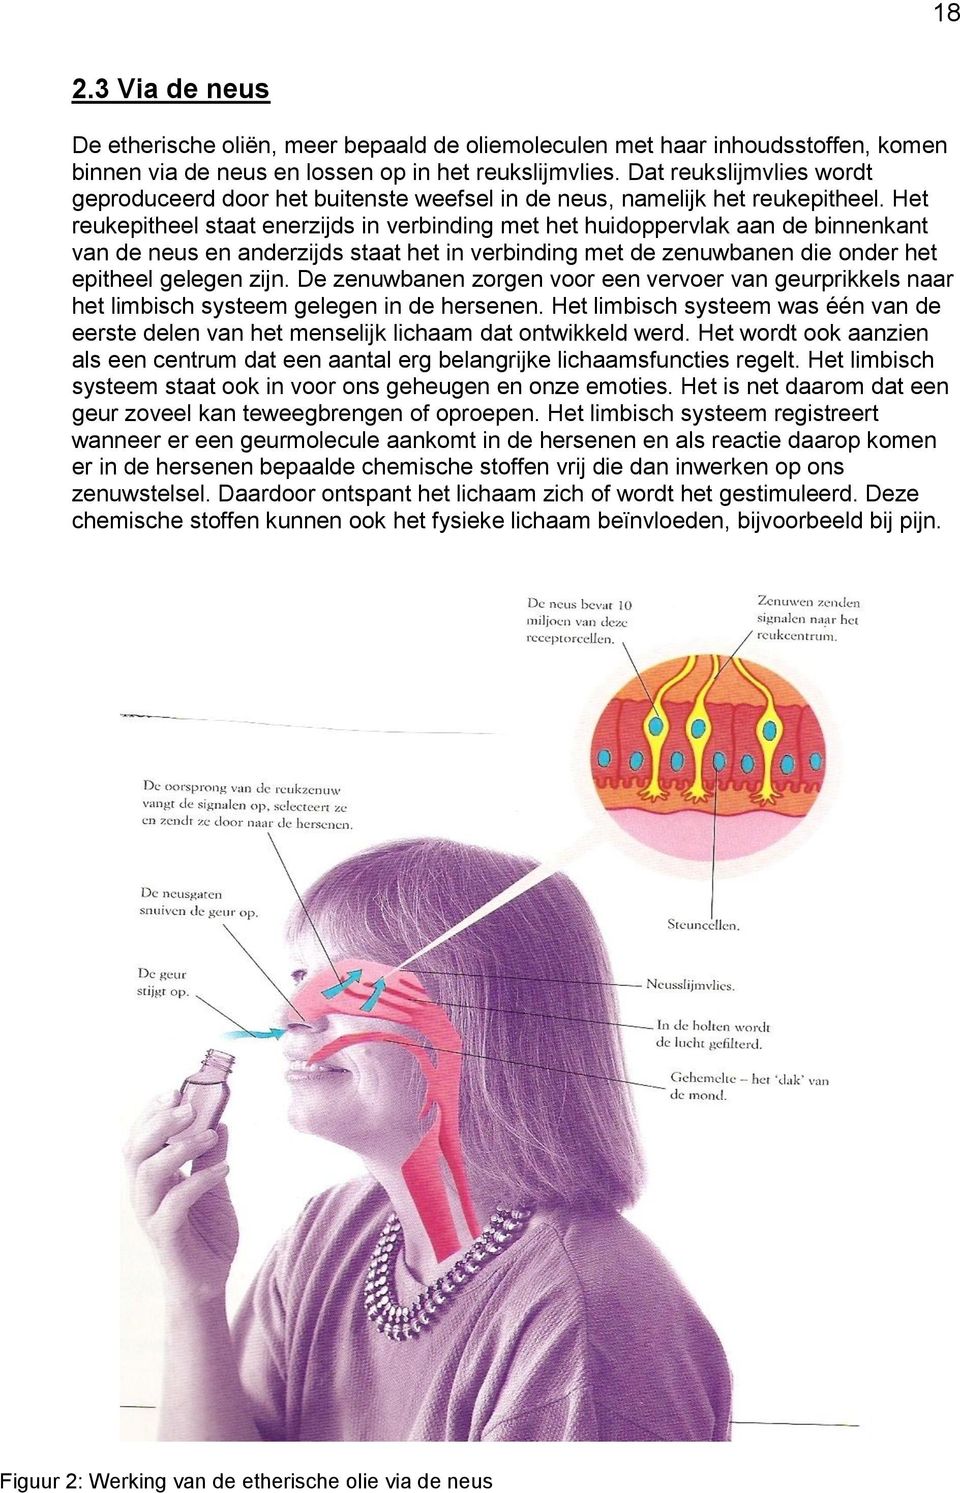 Het reukepitheel staat enerzijds in verbinding met het huidoppervlak aan de binnenkant van de neus en anderzijds staat het in verbinding met de zenuwbanen die onder het epitheel gelegen zijn.